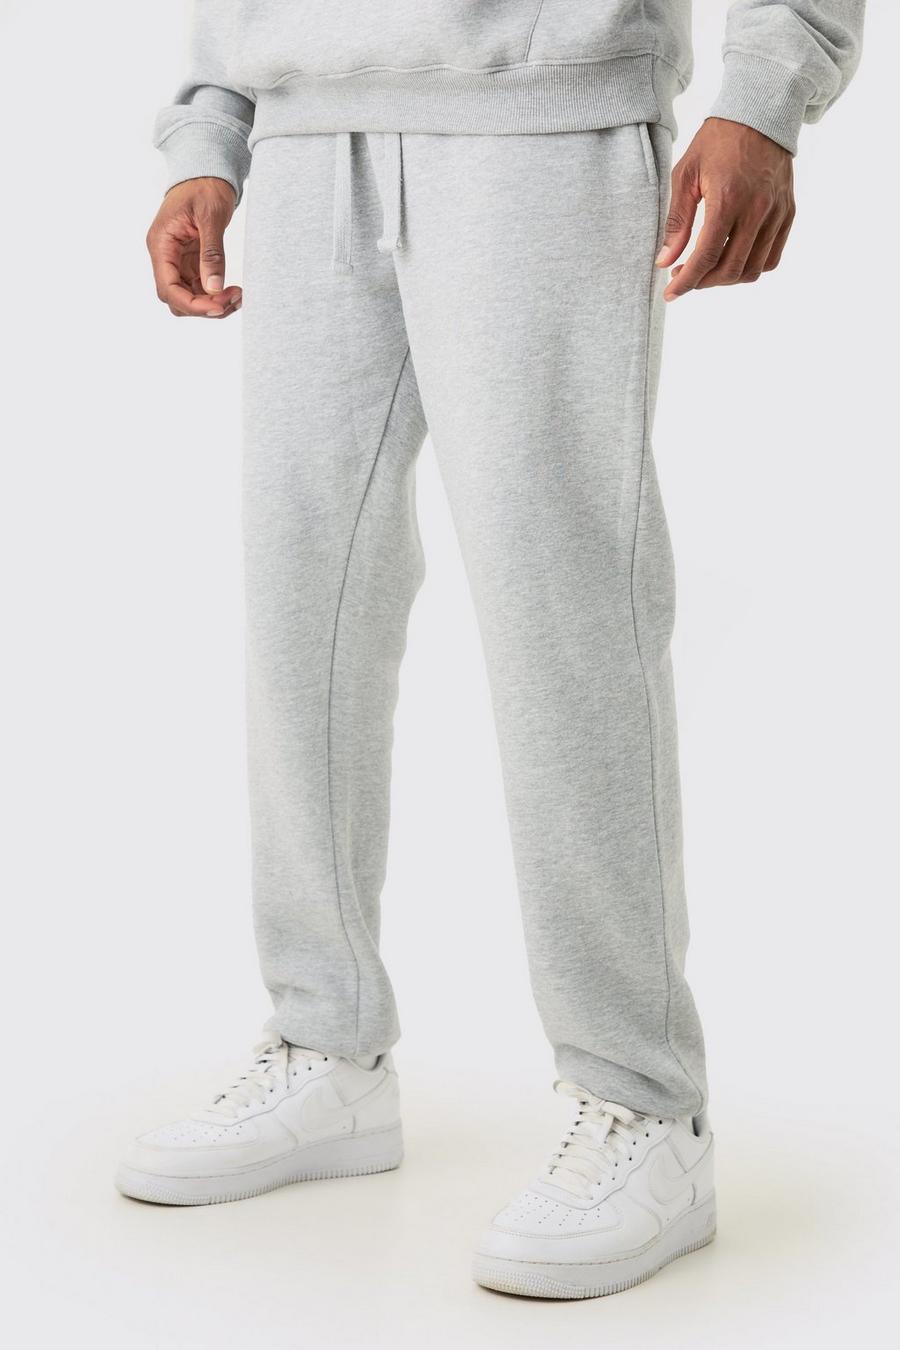 Pantalón deportivo Tall básico ajustado gris jaspeado, Grey marl